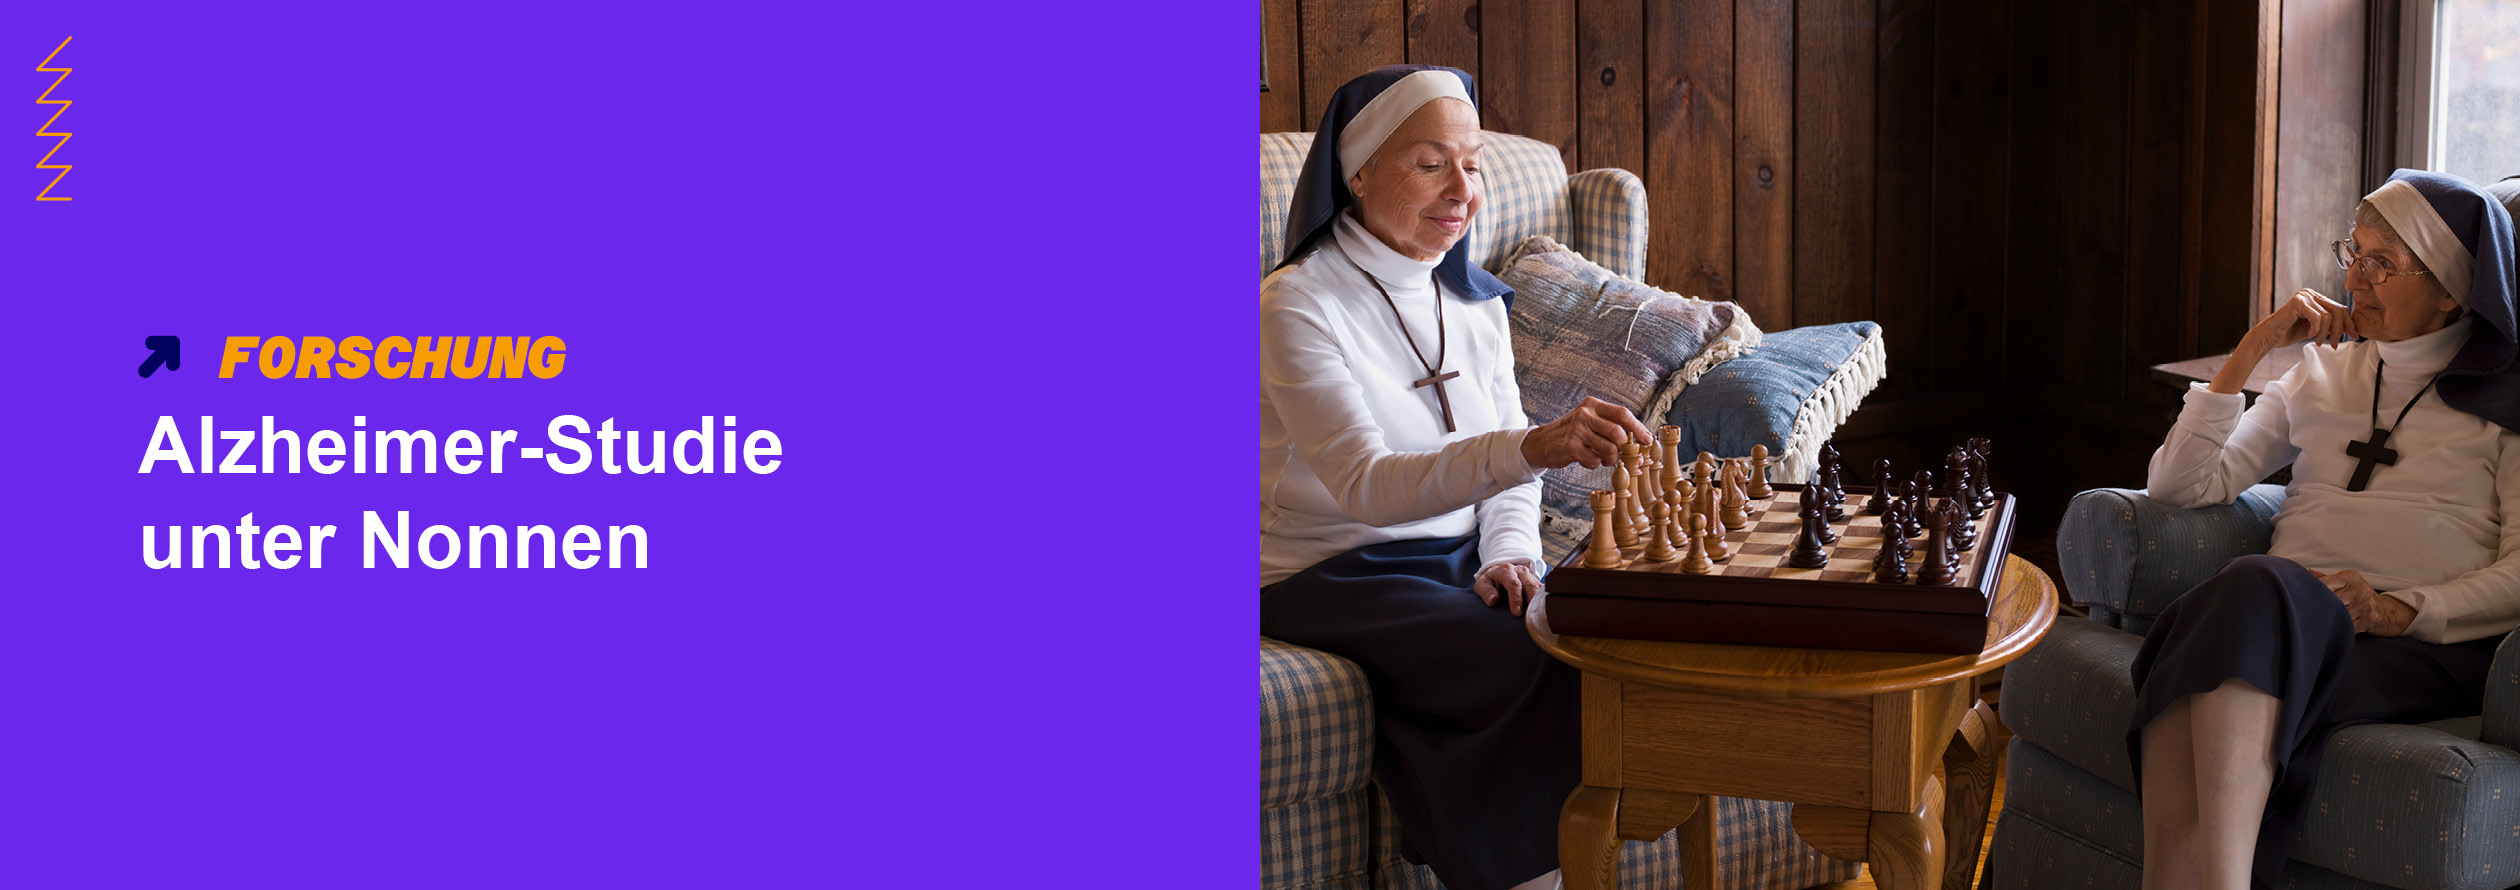 Alzheimer-Studie unter Nonnen